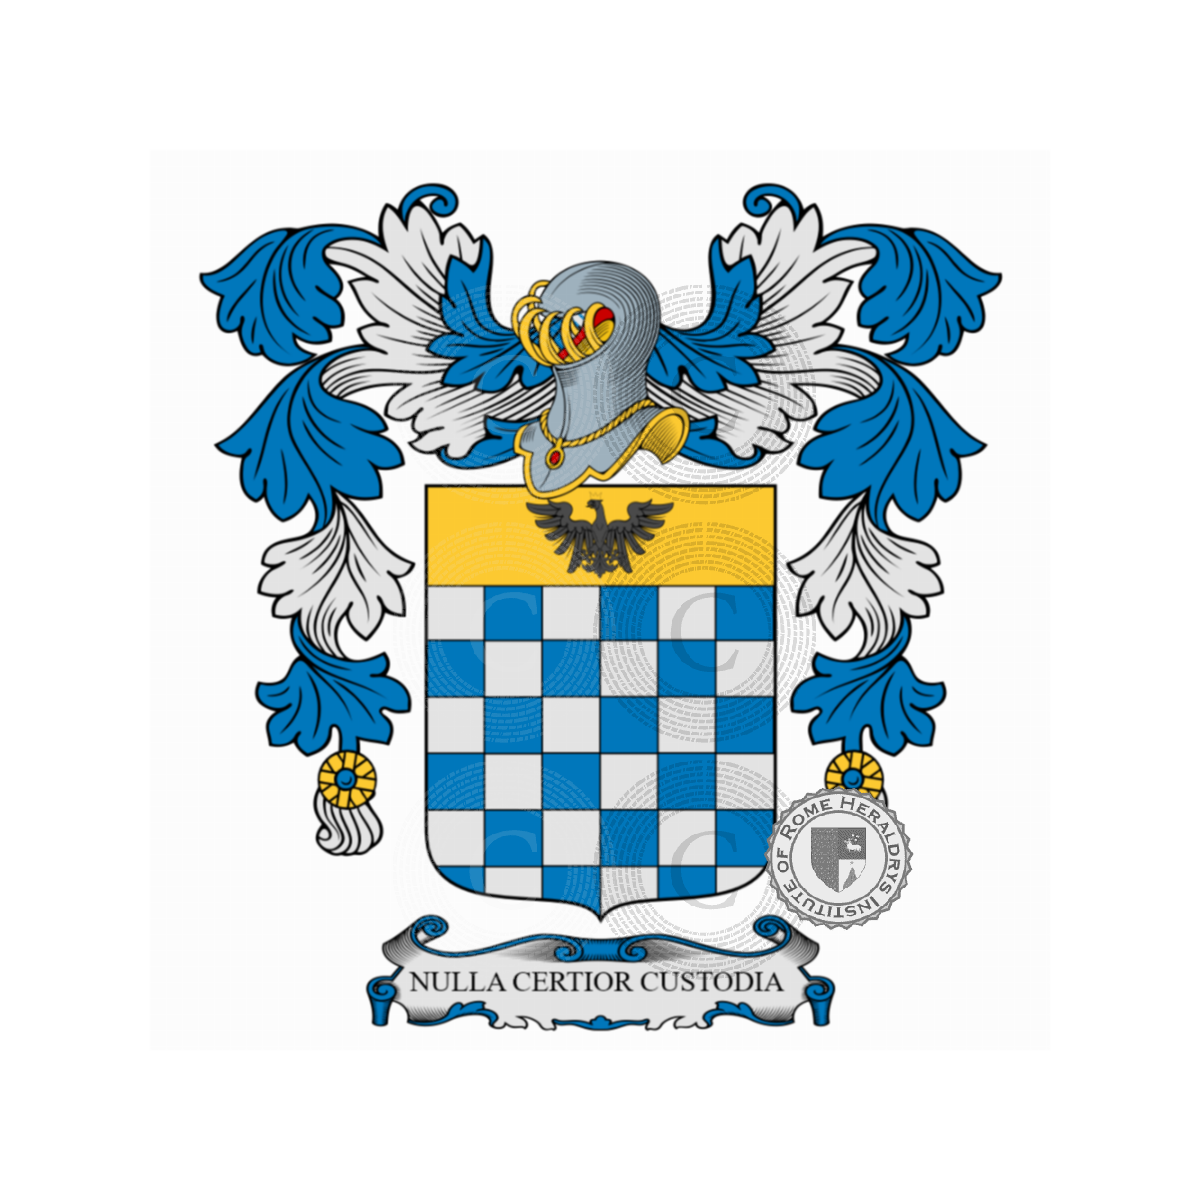 Coat of arms of familyGiorgi, de Giorgi,Georgiani,Georgio,Georgius,Giorgi da Romena,Giorgi de Pons,Giorgi del Lion d'Oro,Giorgiani,Giorgianni,Zorzi